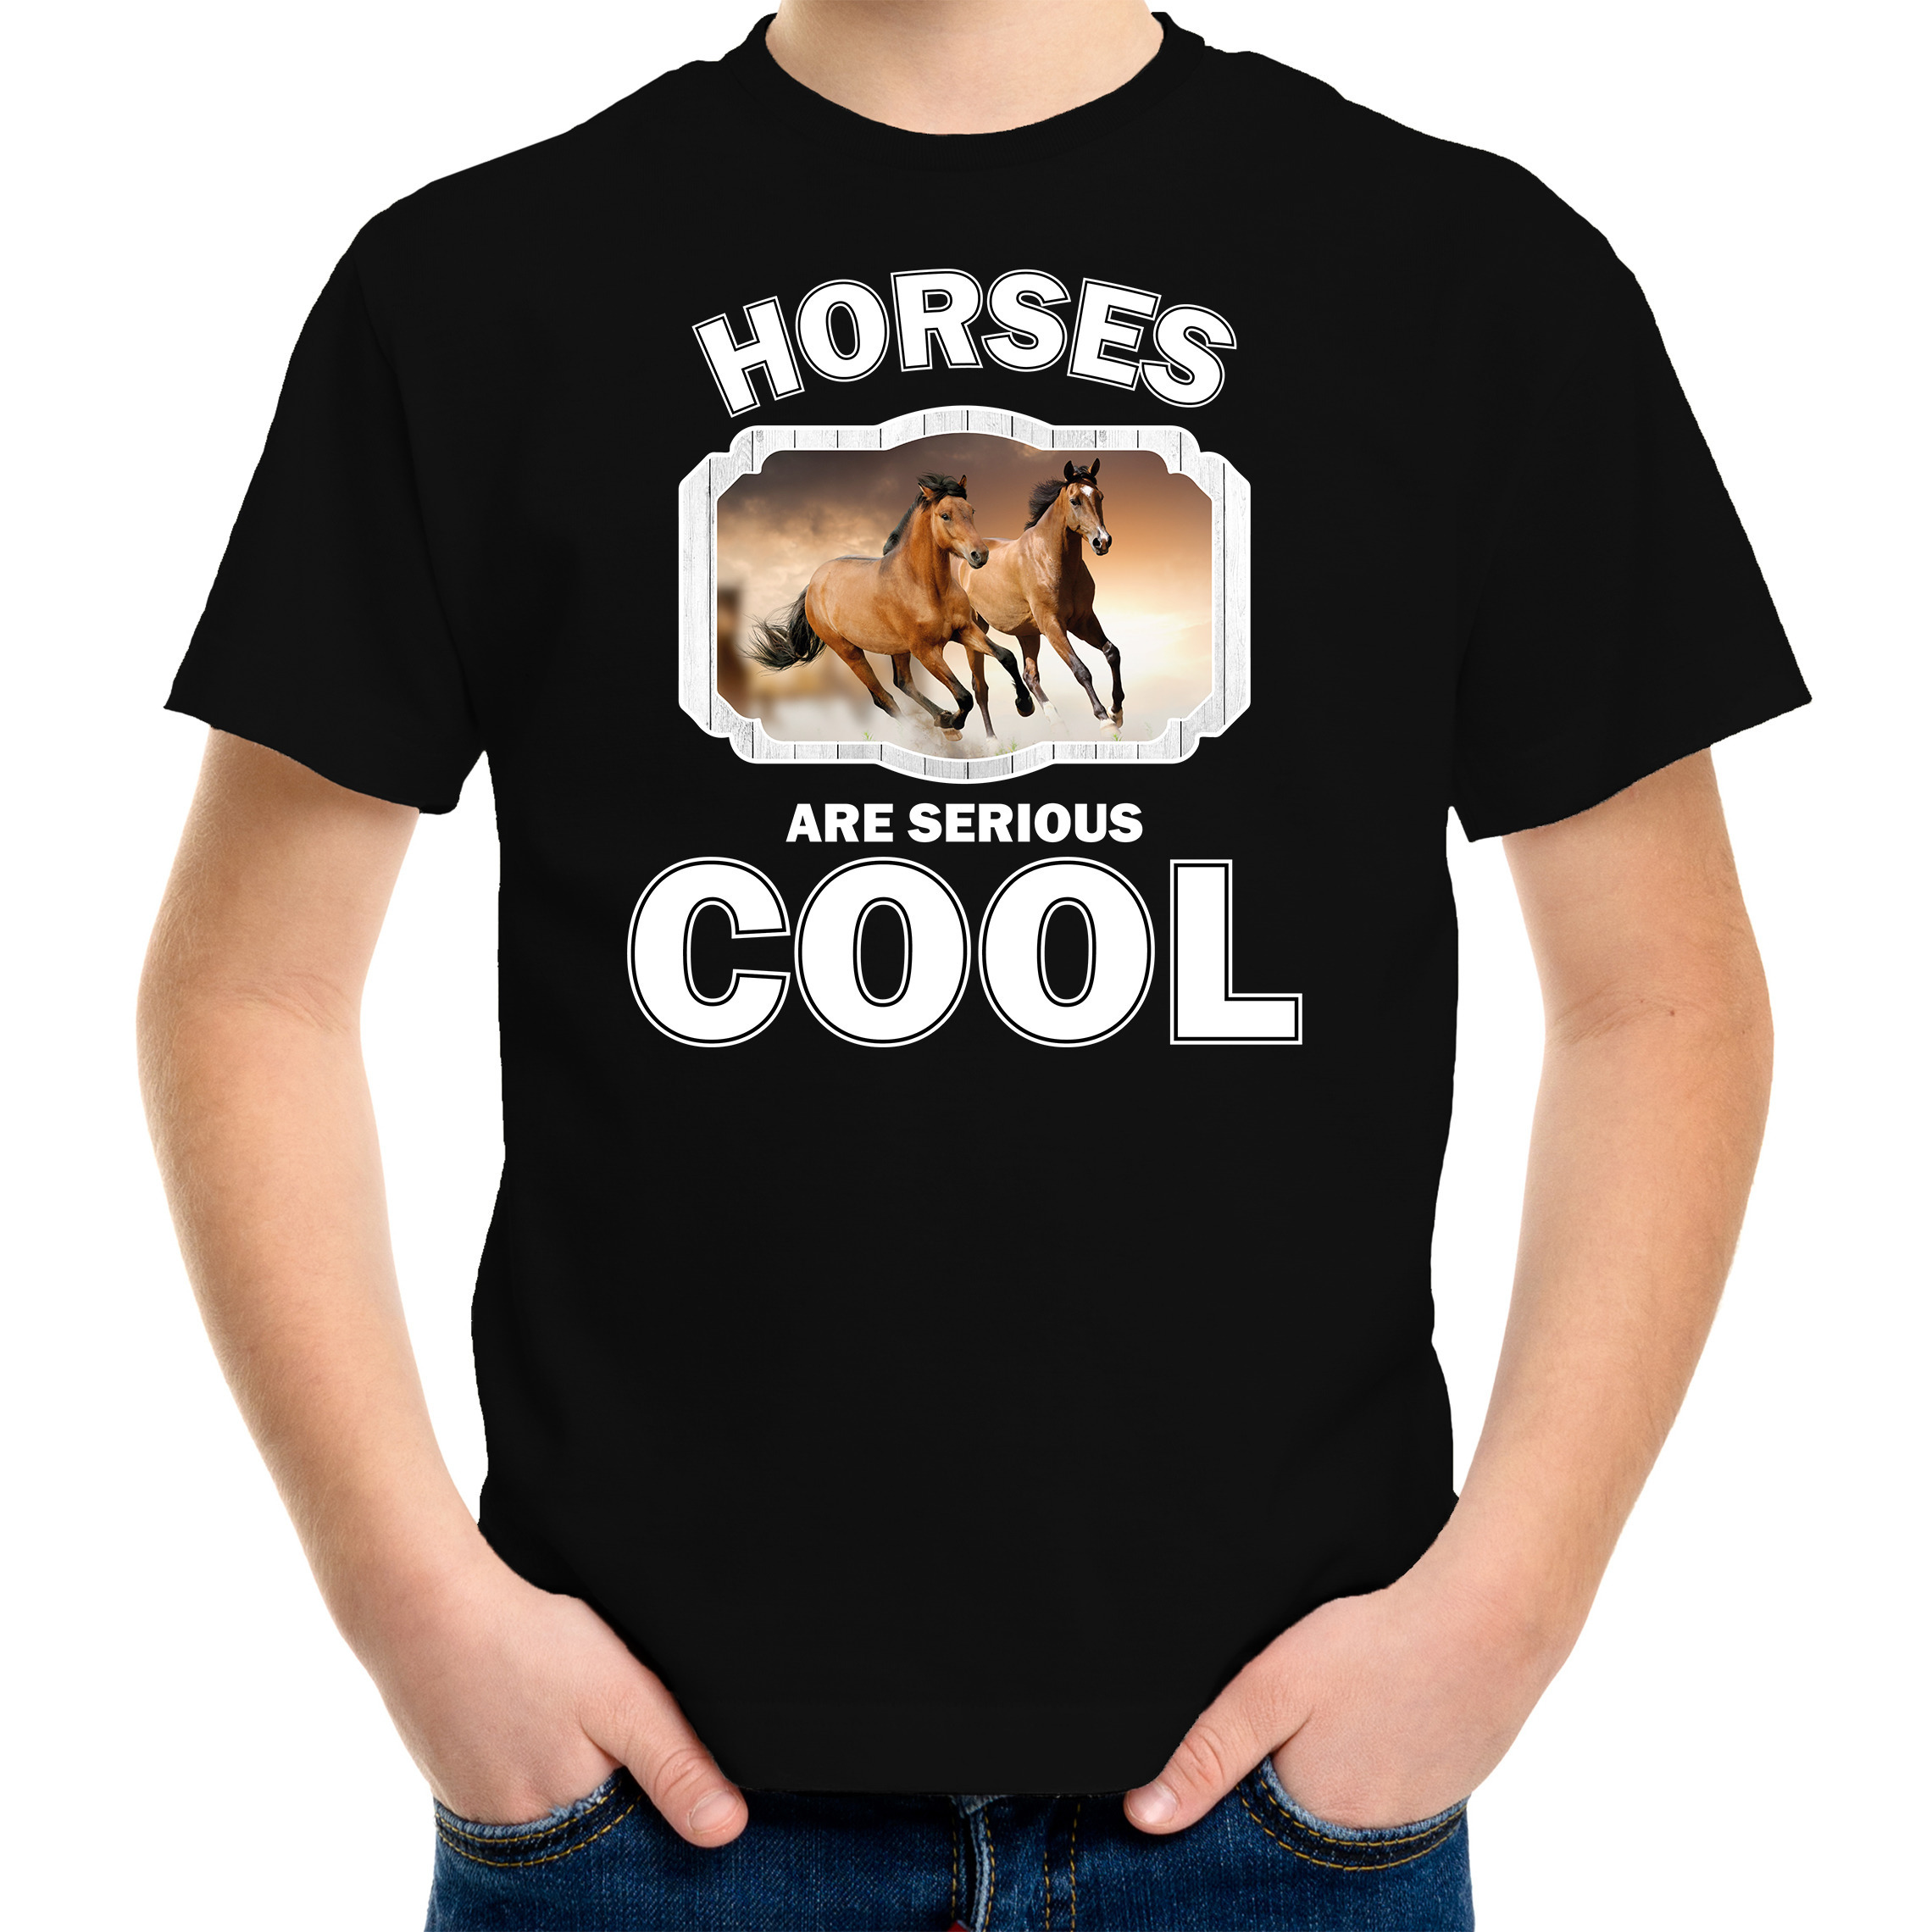 Dieren bruin paard t-shirt zwart kinderen horses are cool shirt jongens en meisjes